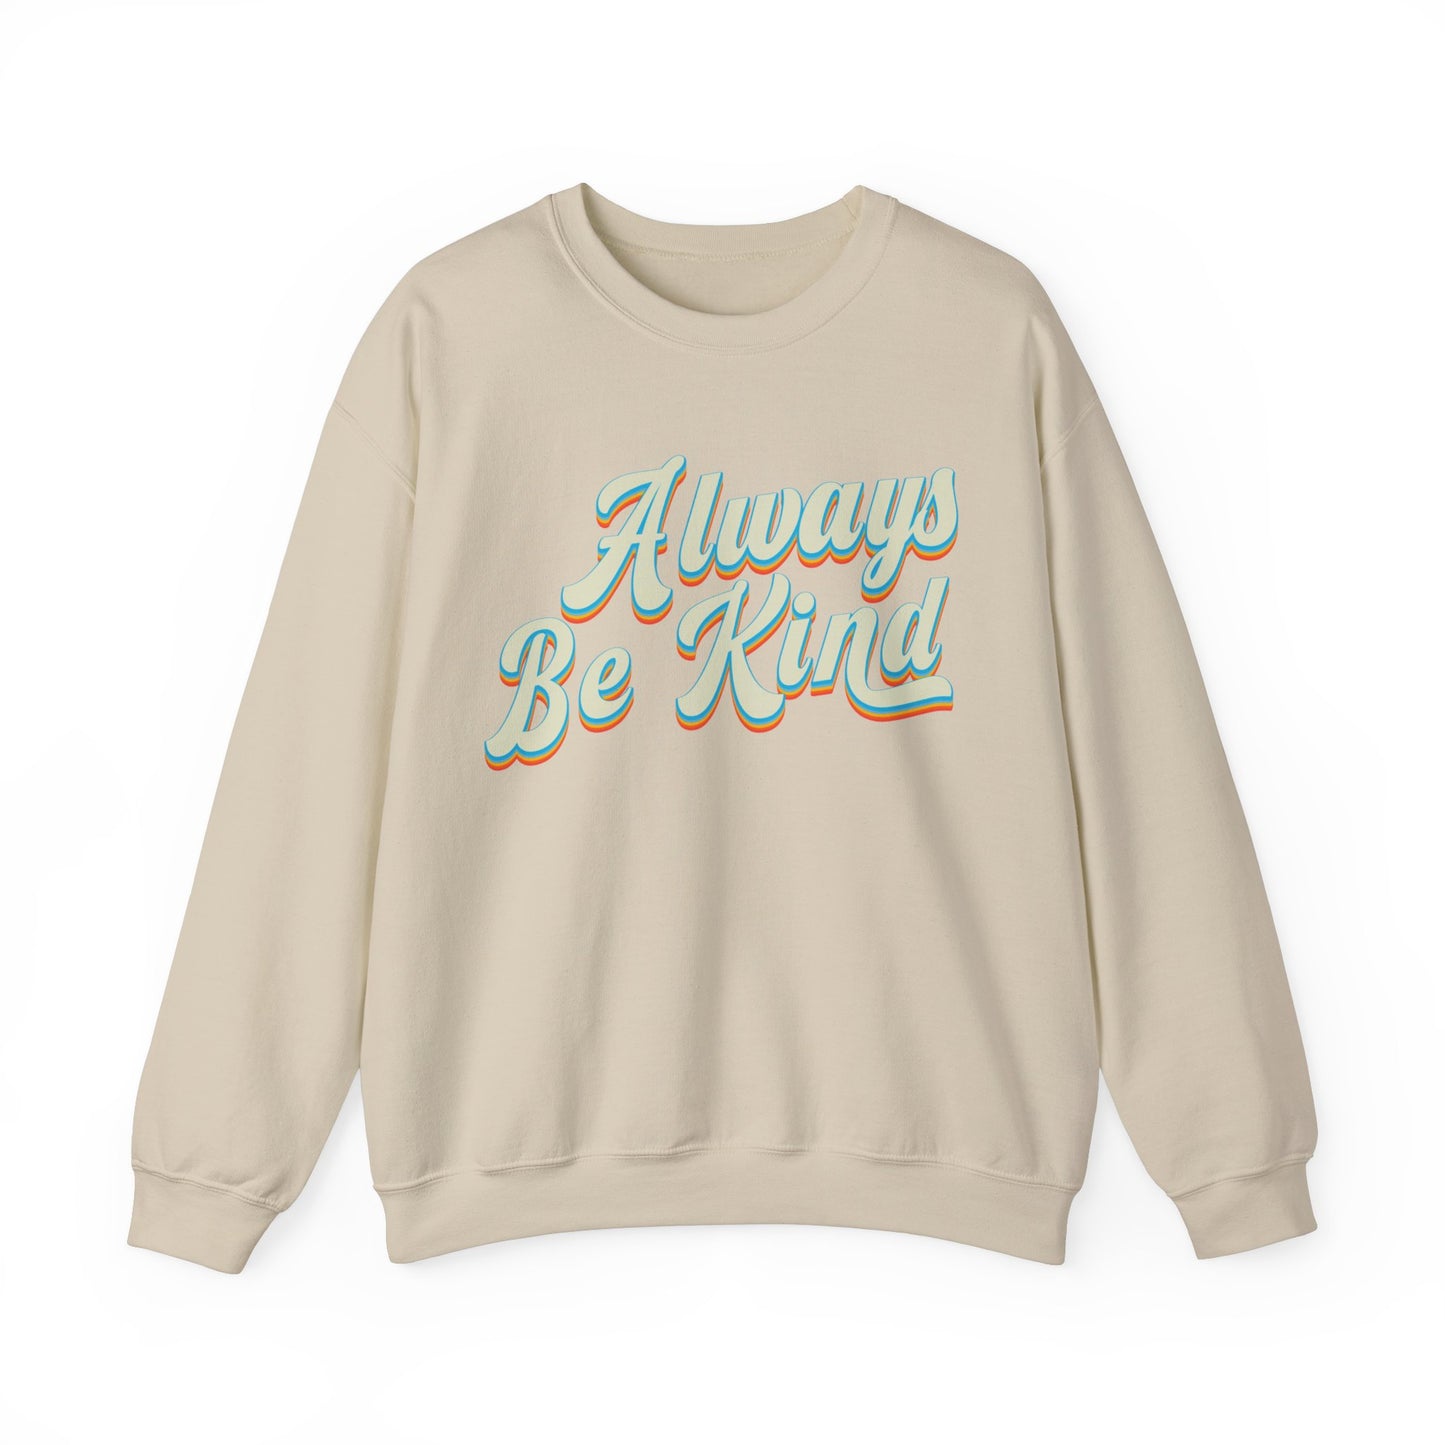 Always Be Kind Sweatshirt, Positivity Sweatshirt, Kind Mom Sweatshirt, Be a Kind Human Sweatshirt, Cute Inspirational Sweatshirt, S1373